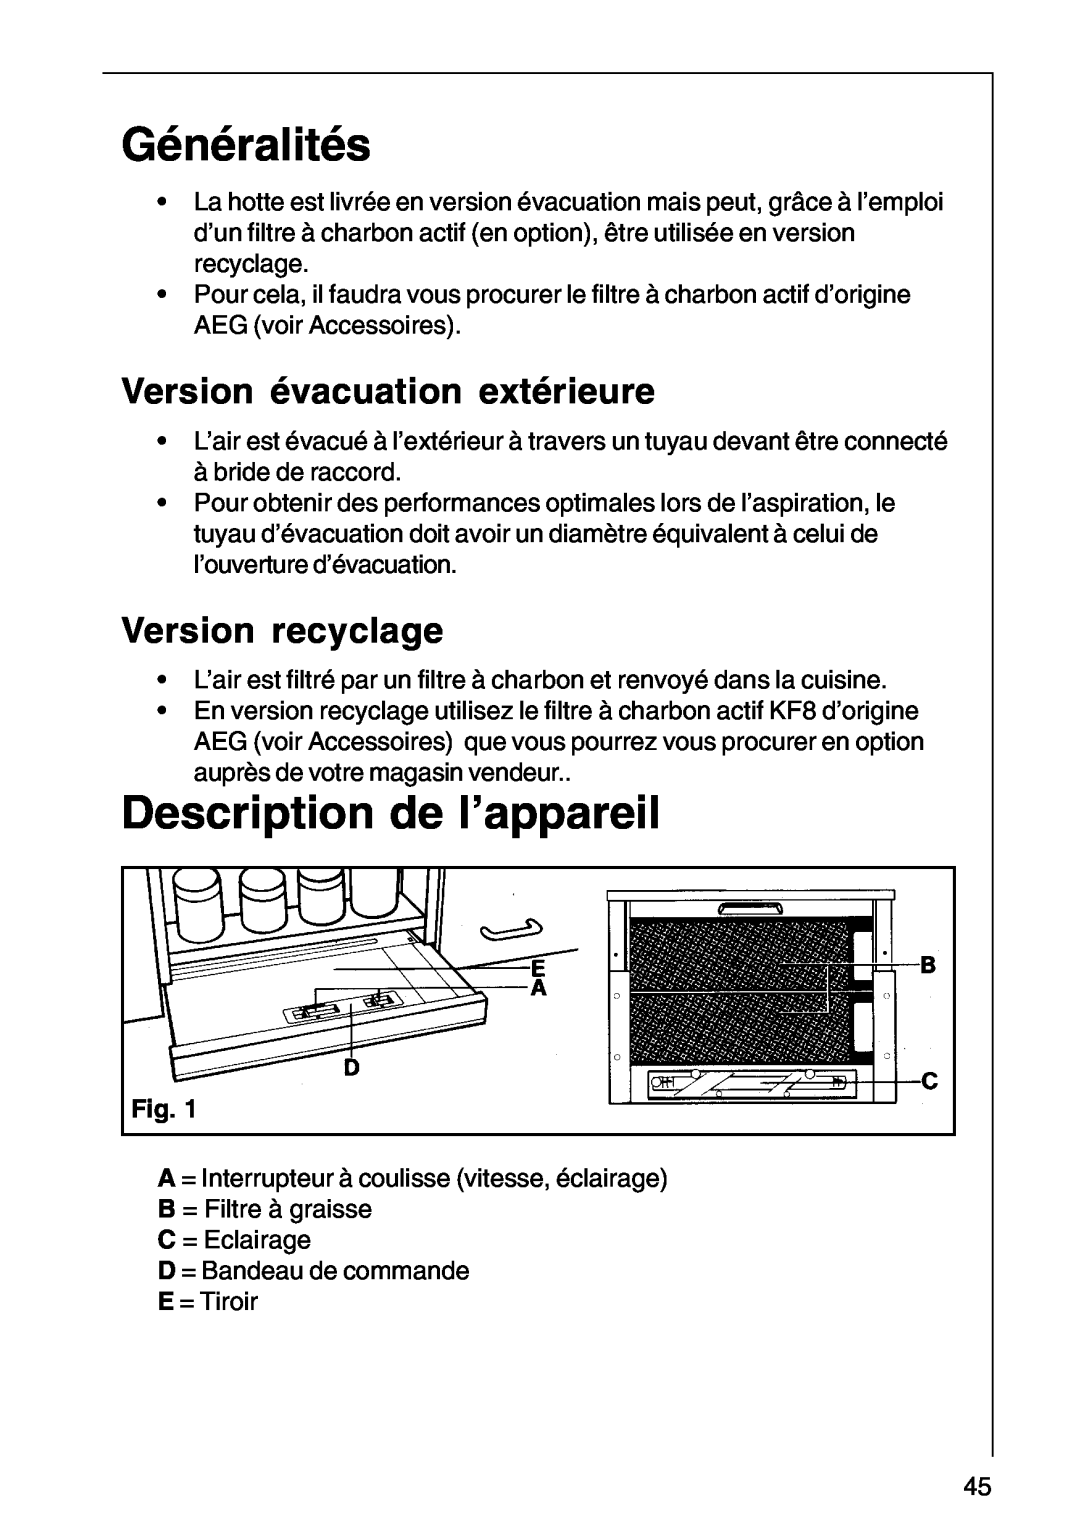 AEG DF 6160, CHDF 6260 Généralités, Description de l’appareil, Version évacuation extérieure, Version recyclage 